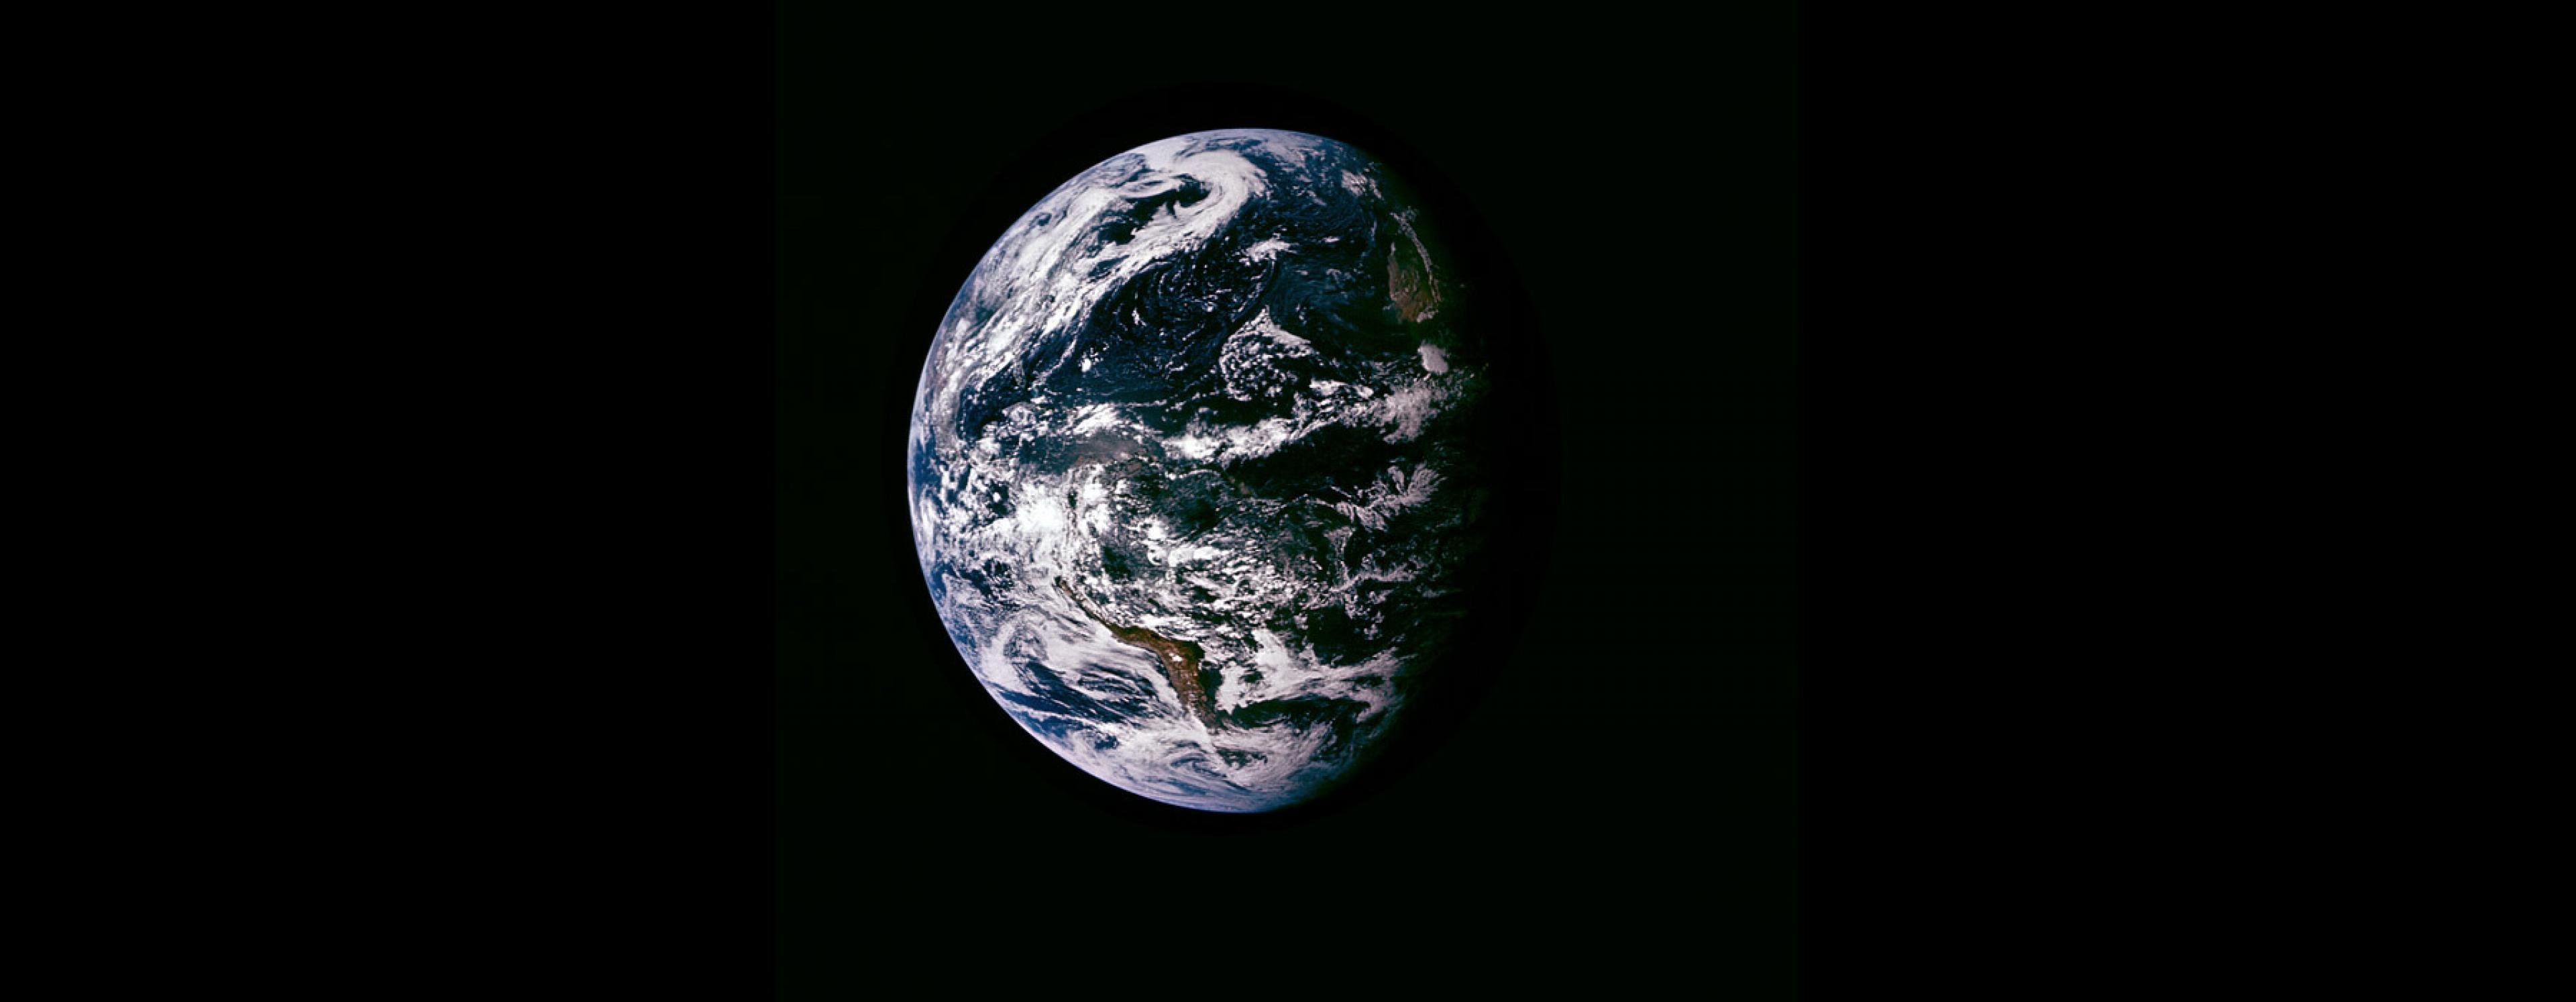 Der blaue Planet Erde, aus Sicht der drei NASA-Astronauten der Mission Apollo 15 David Scott, Alfred Worden und James Irwin.